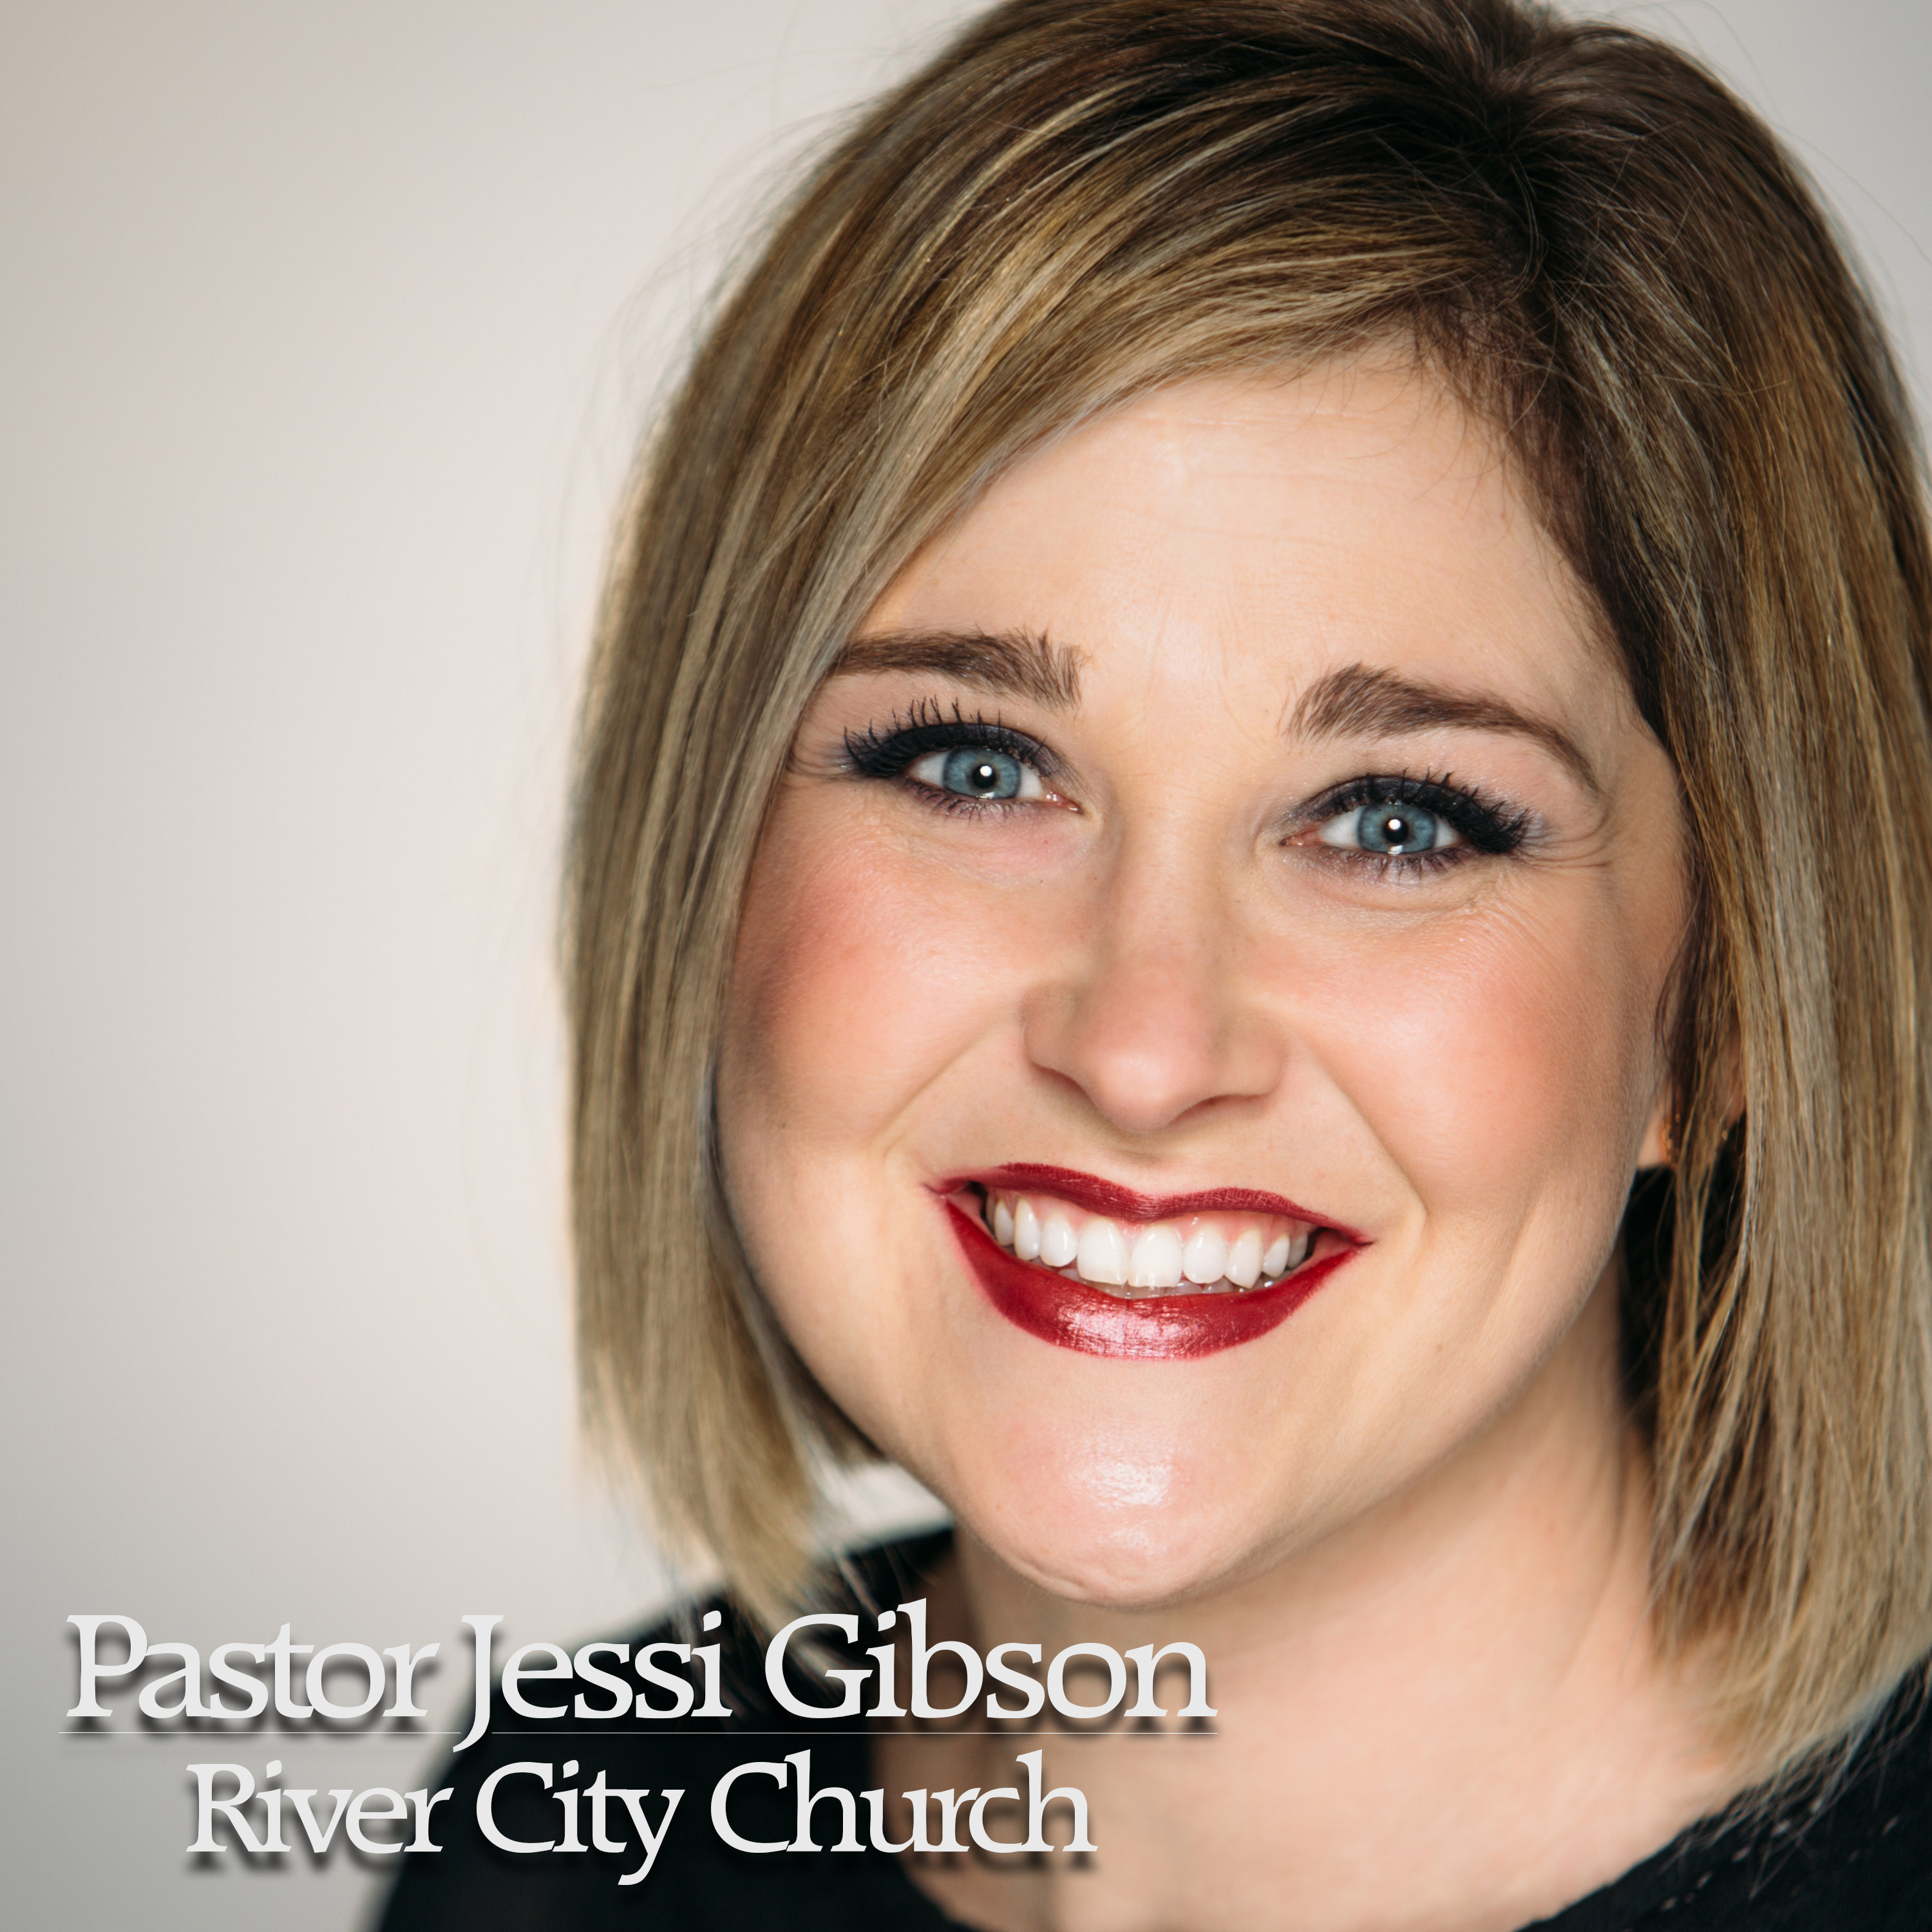 Owensboro Church | Seek the Face